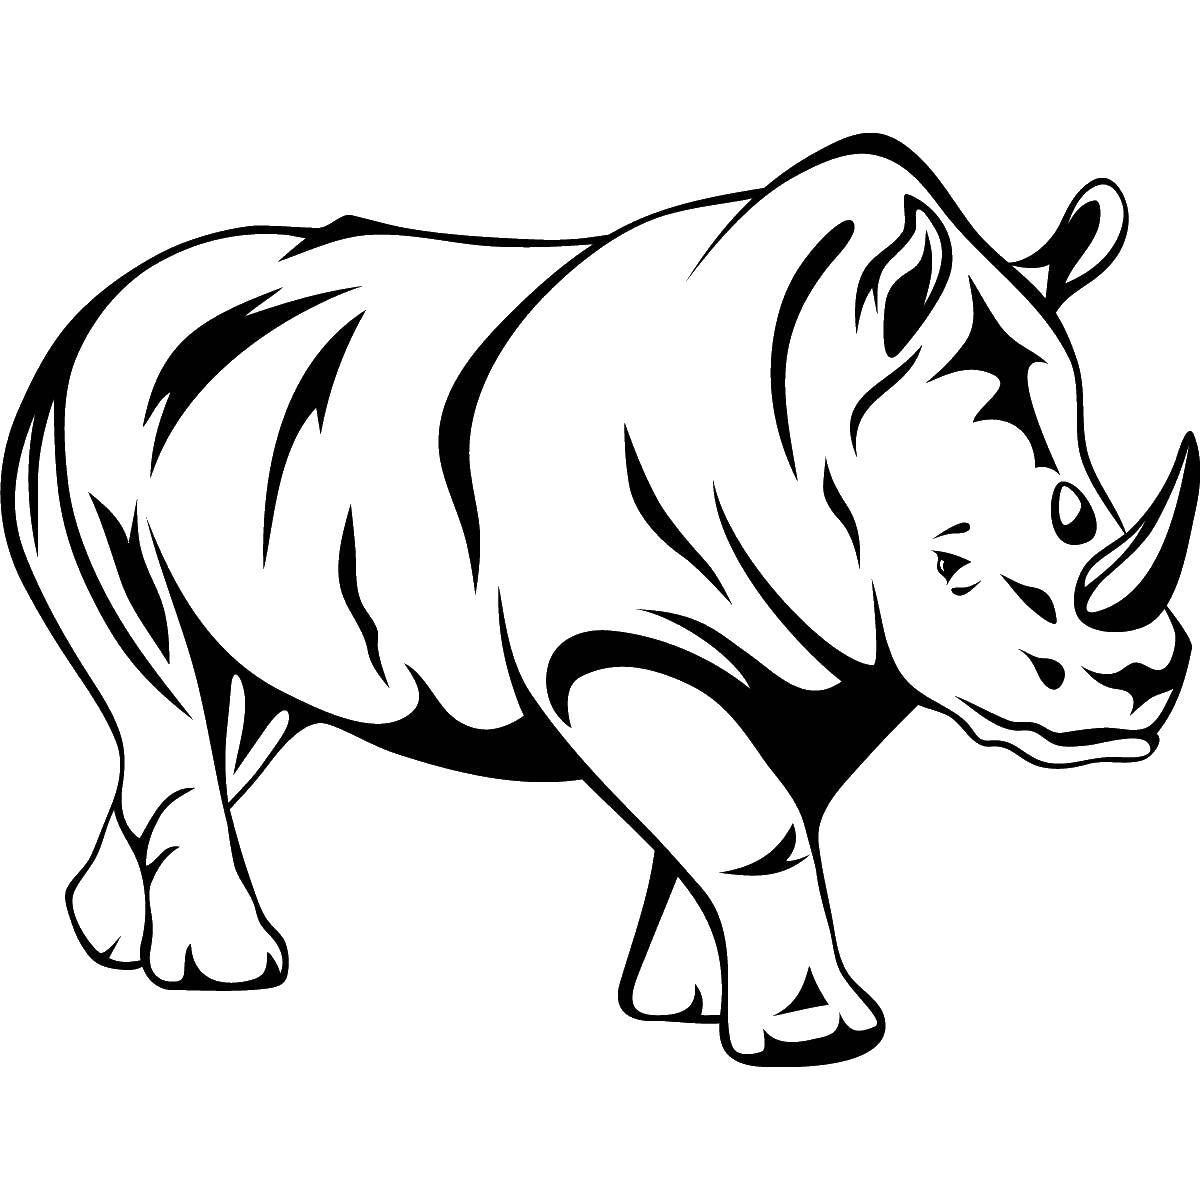 Опис: розмальовки  Великий носоріг. Категорія: Тварини. Теги:  Тварини, носоріг.